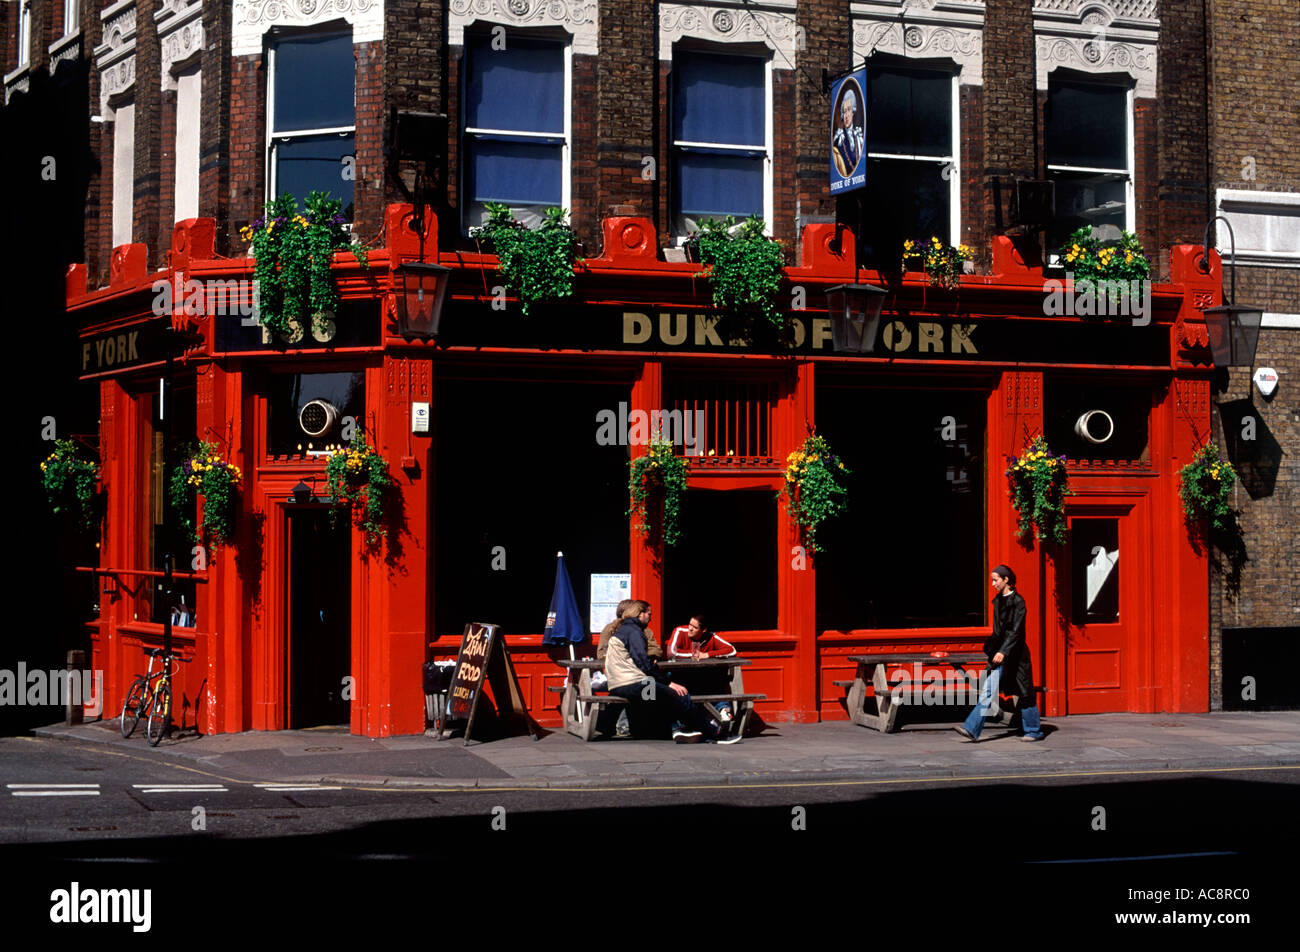 Pub rouge vif, très populaire avec location de messagerie, avec des personnes bénéficiant d'un verre, Clerkenwell Road, Londres, Angleterre, Grande-Bretagne Banque D'Images